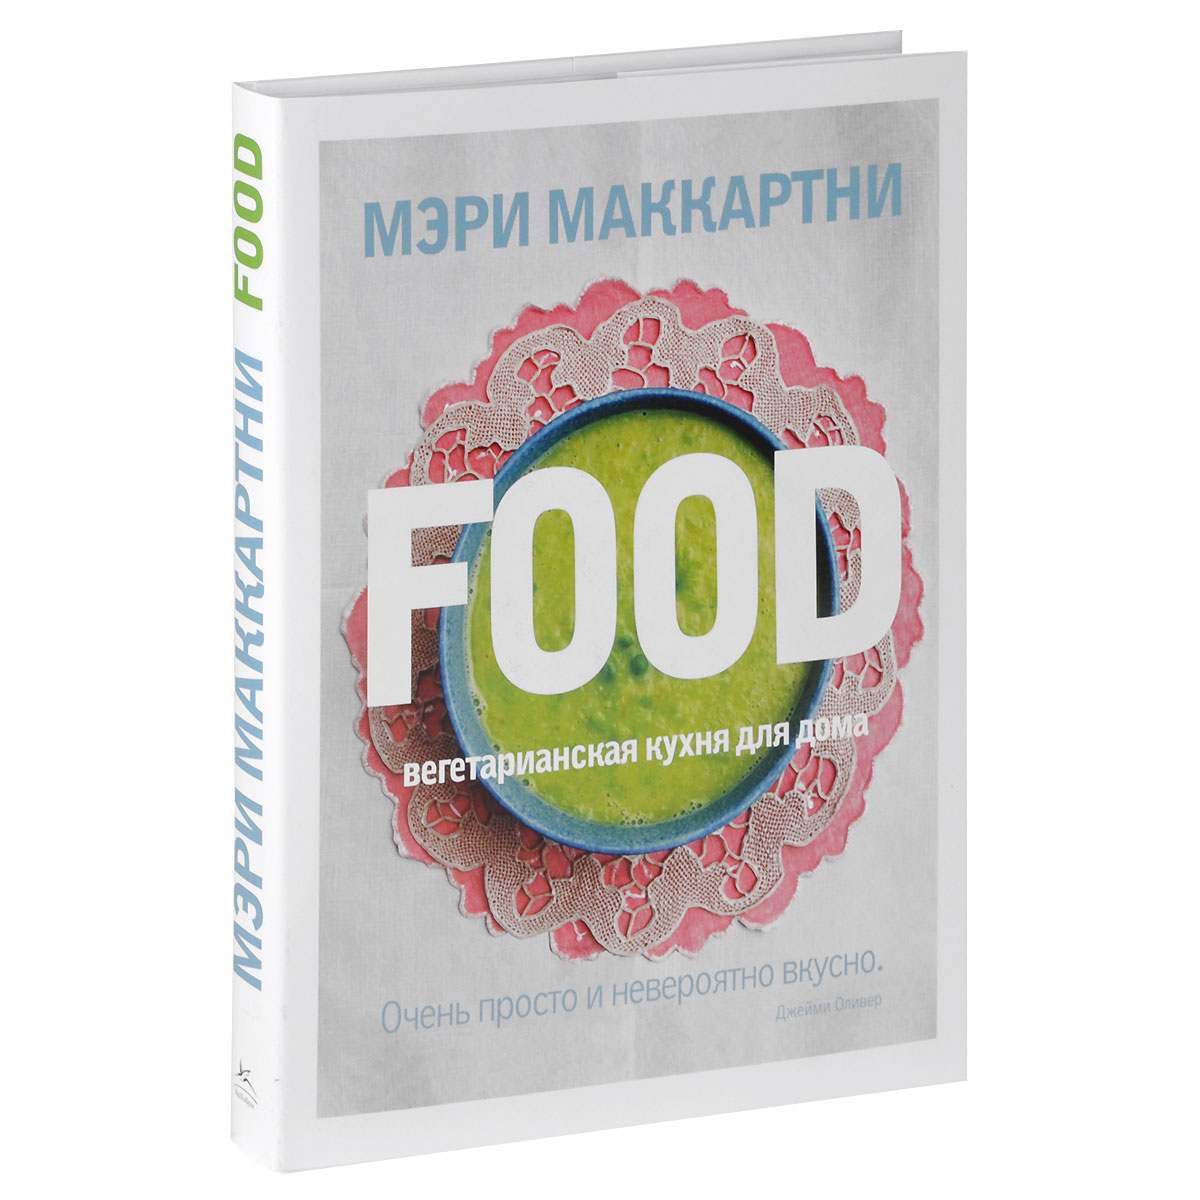 Книга FOOD. Вегетарианская кухня для дома - купить книгу food. вегетарианская кухня для дома от Мэри Маккартни в книжном интернет магазине с доставкой по выгодной цене